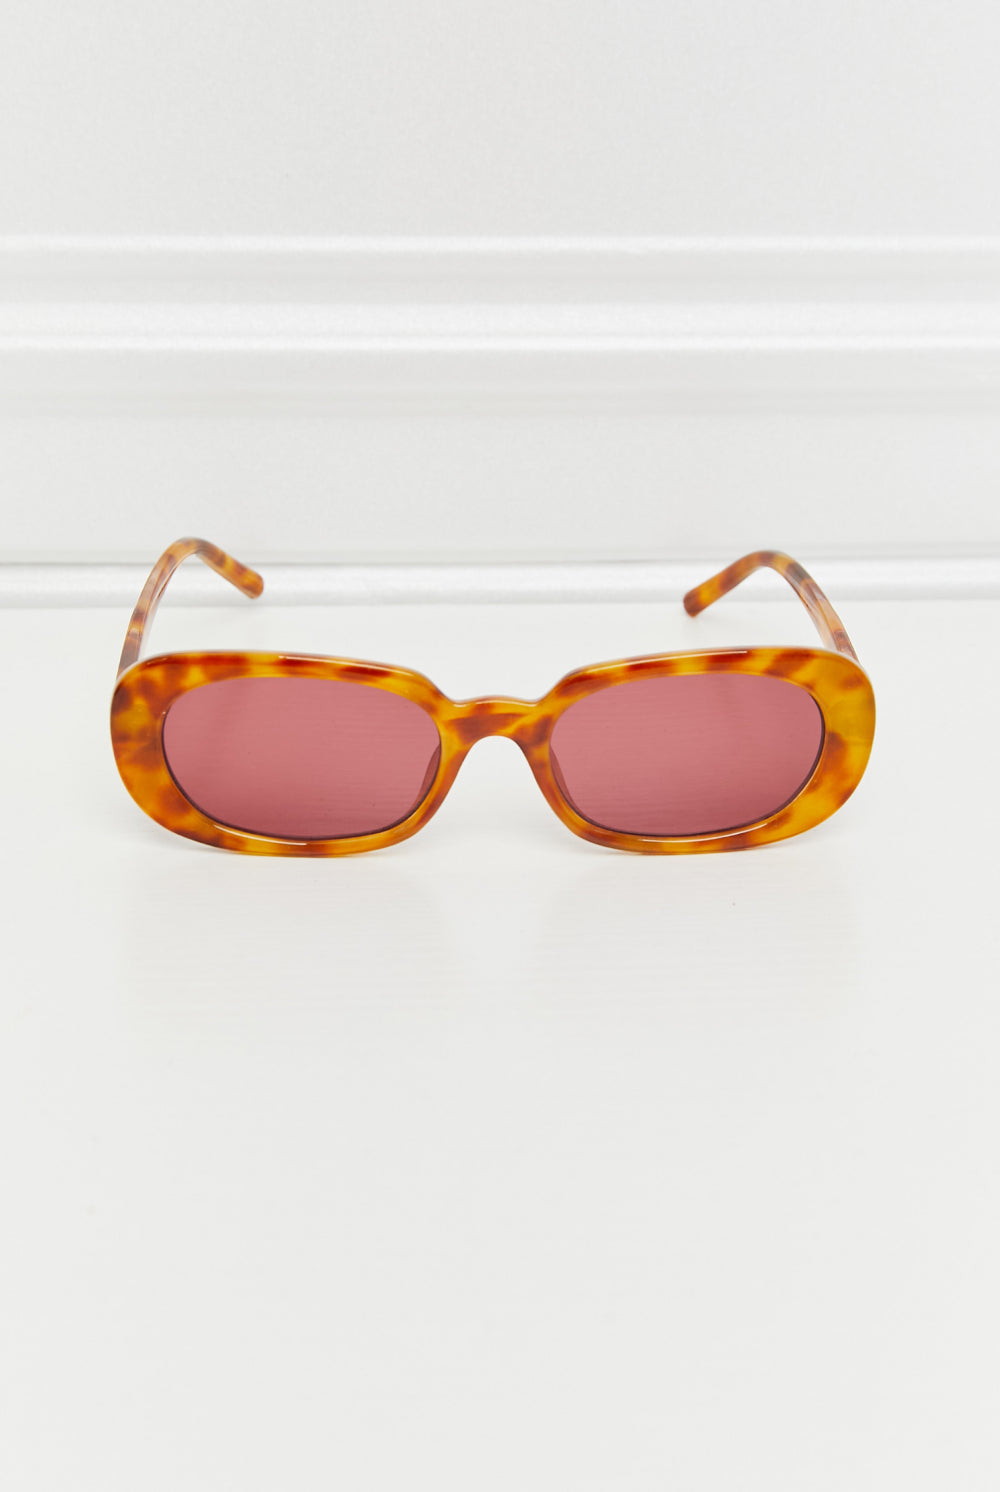 Lavender Oval Full Rim Sunglasses Accessories